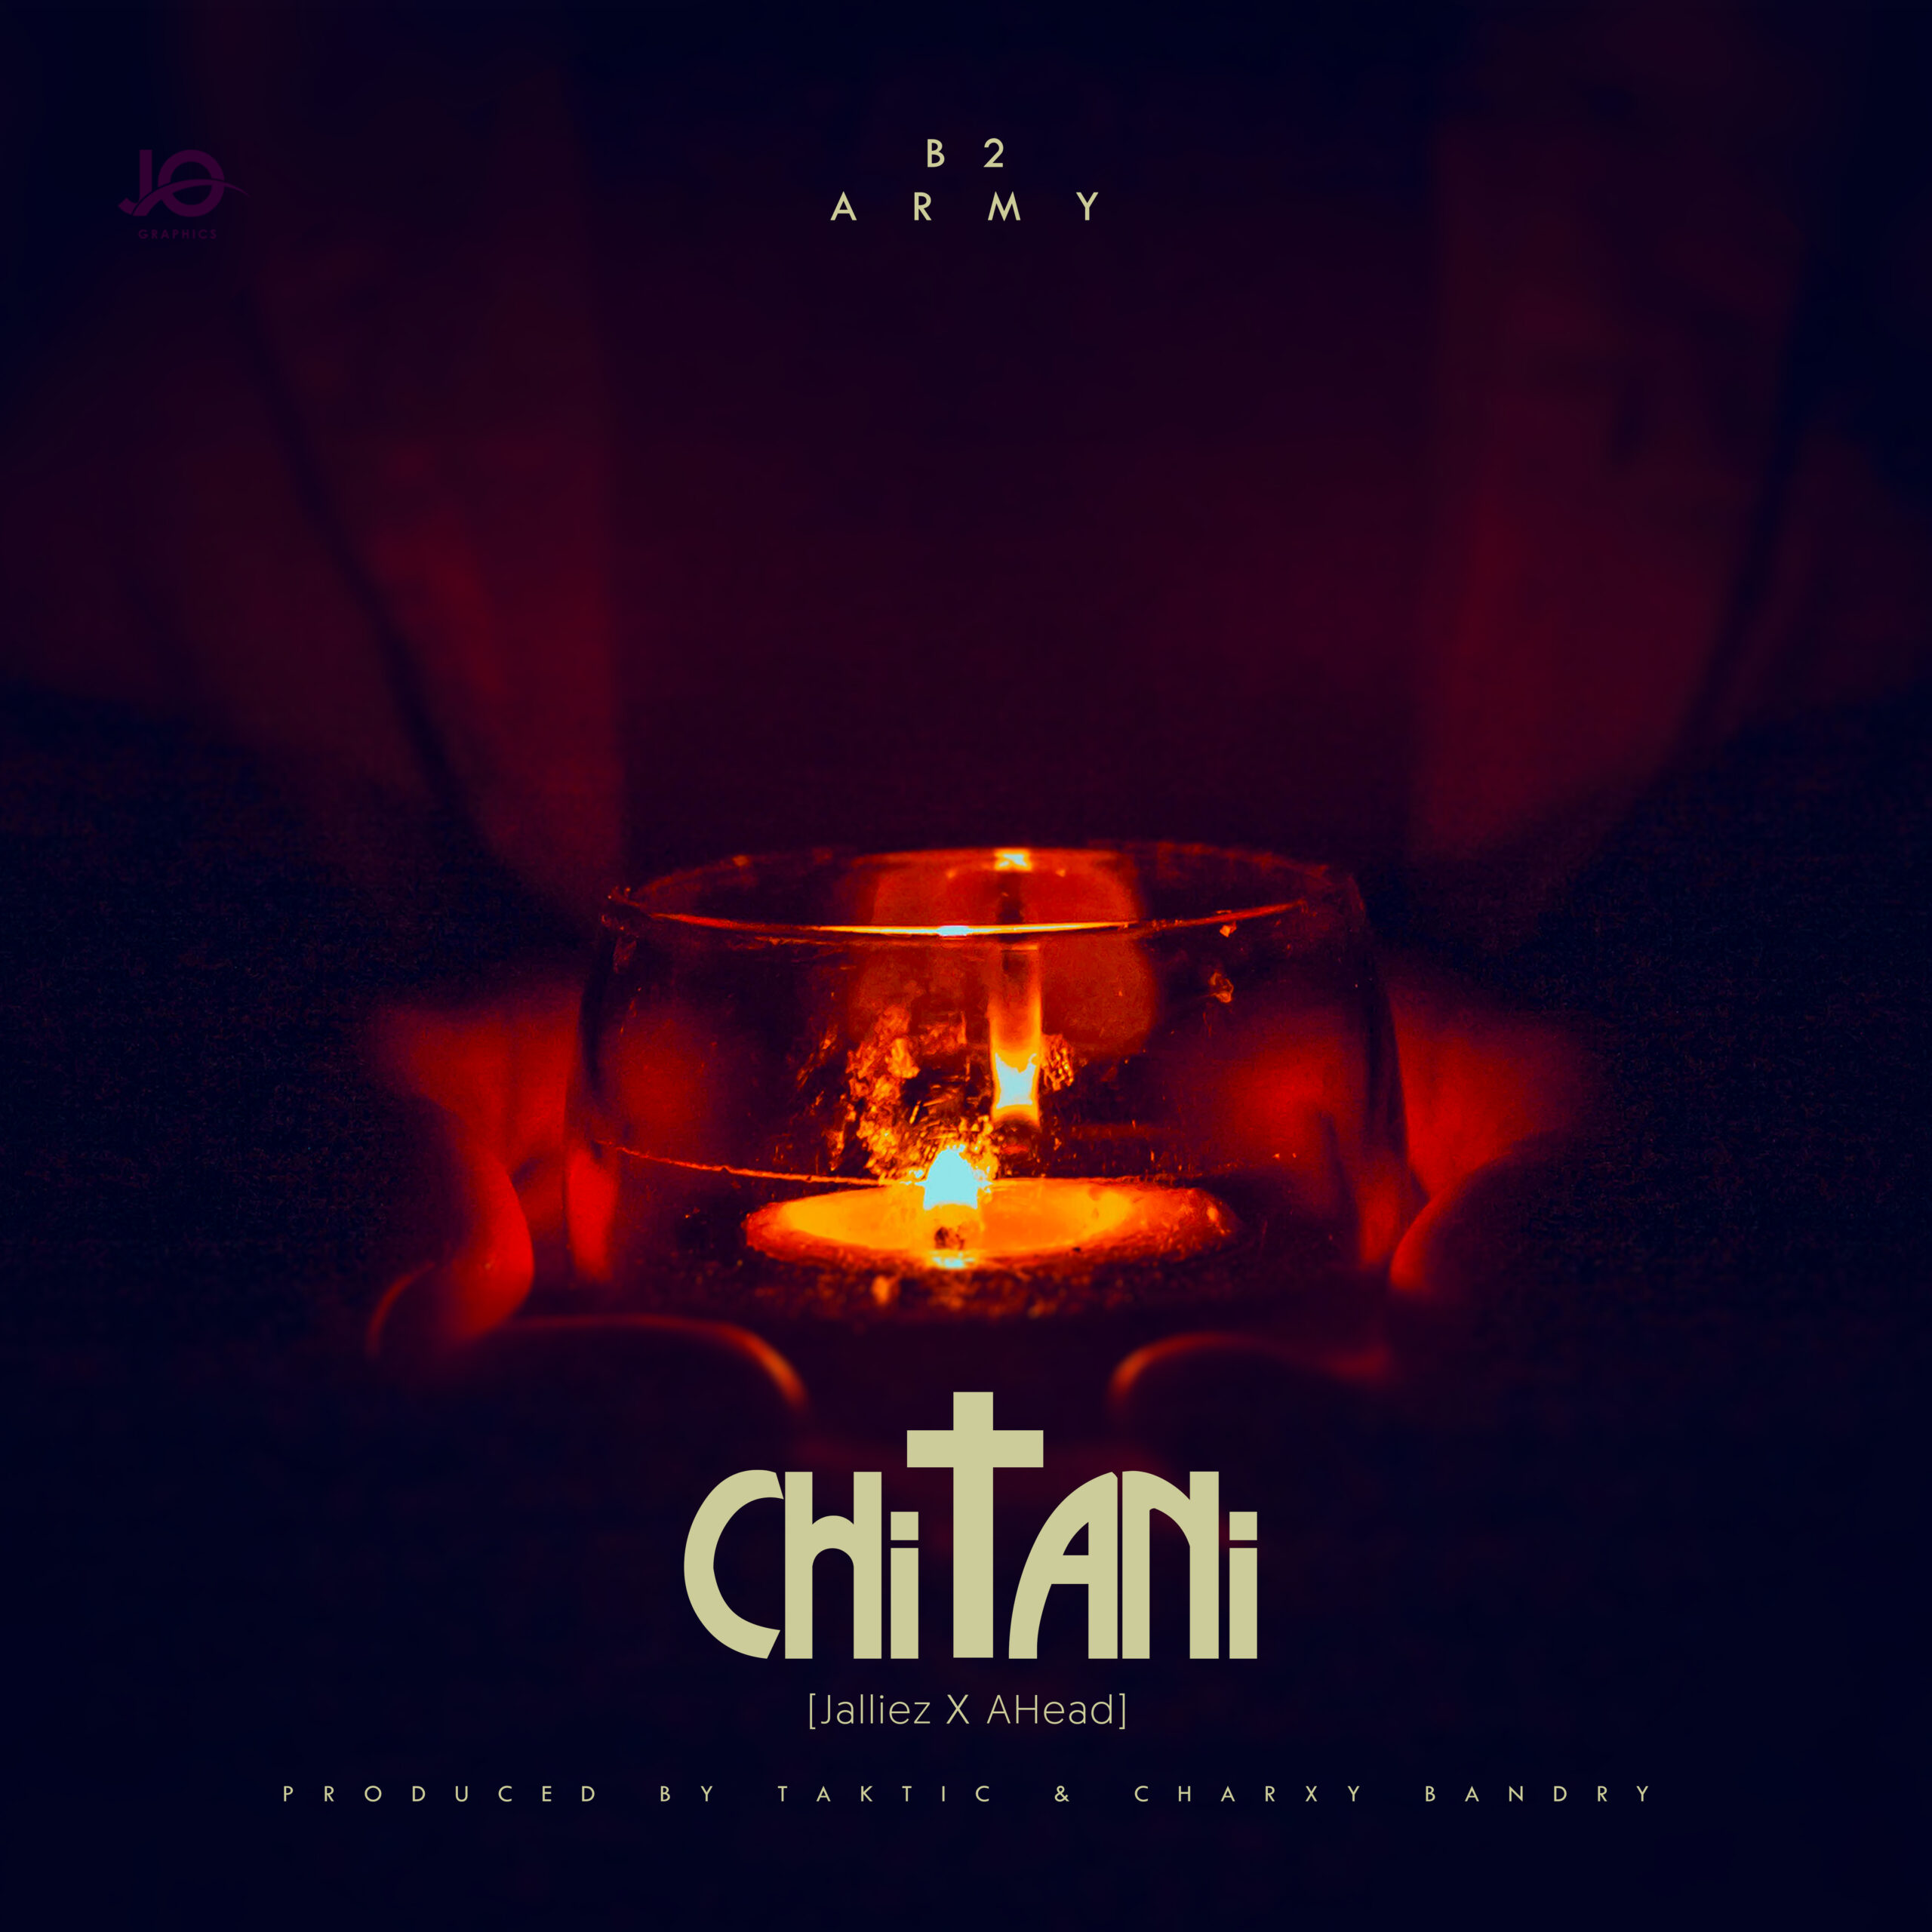  [Music Download]B2 Army – Chitani